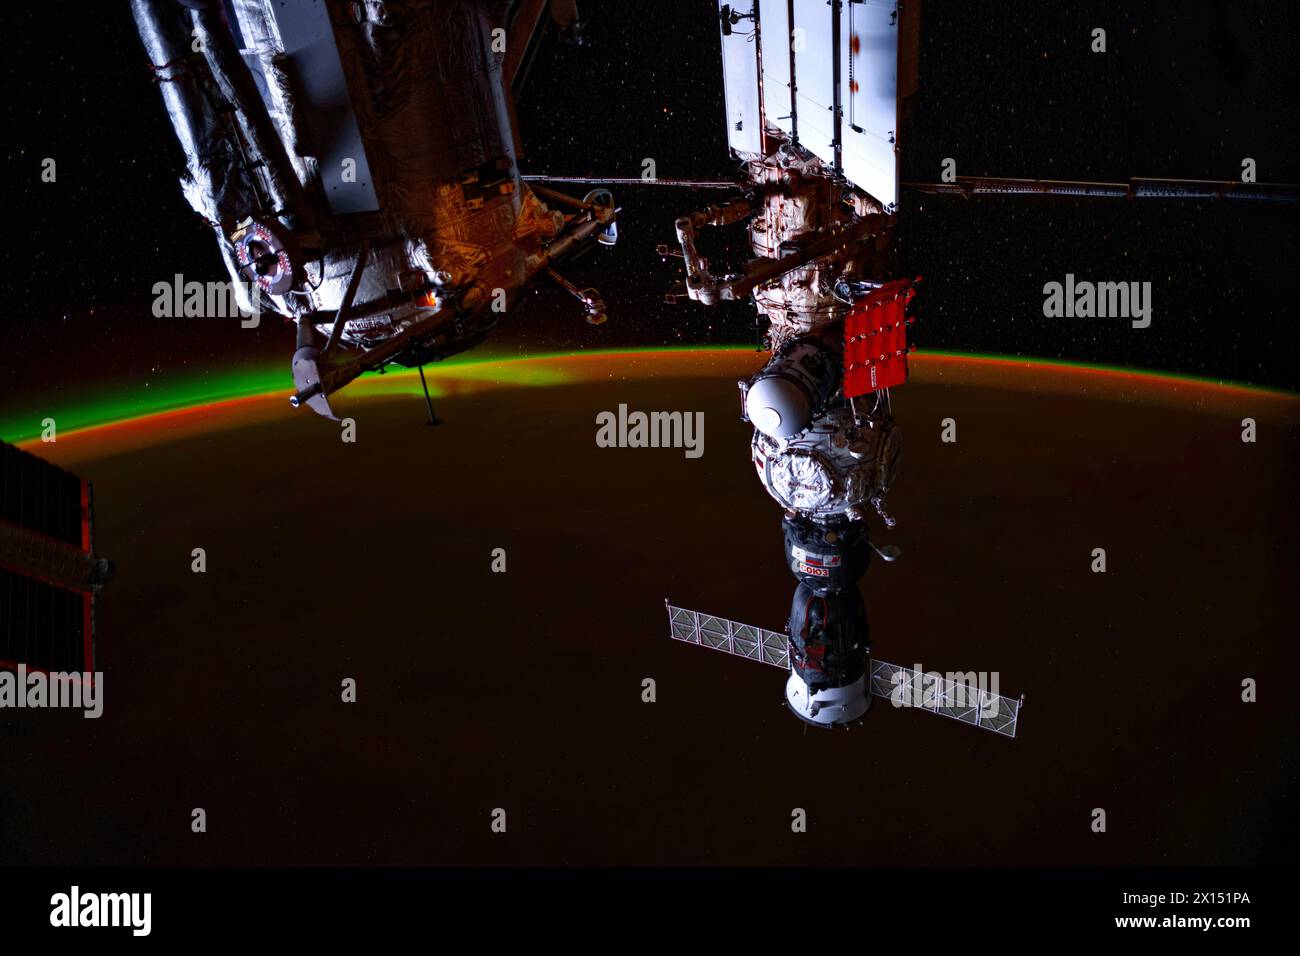 Stazione spaziale Internazionale o ISS e vista del pianeta Terra. Miglioramento digitale di un'immagine da parte della NASA Foto Stock